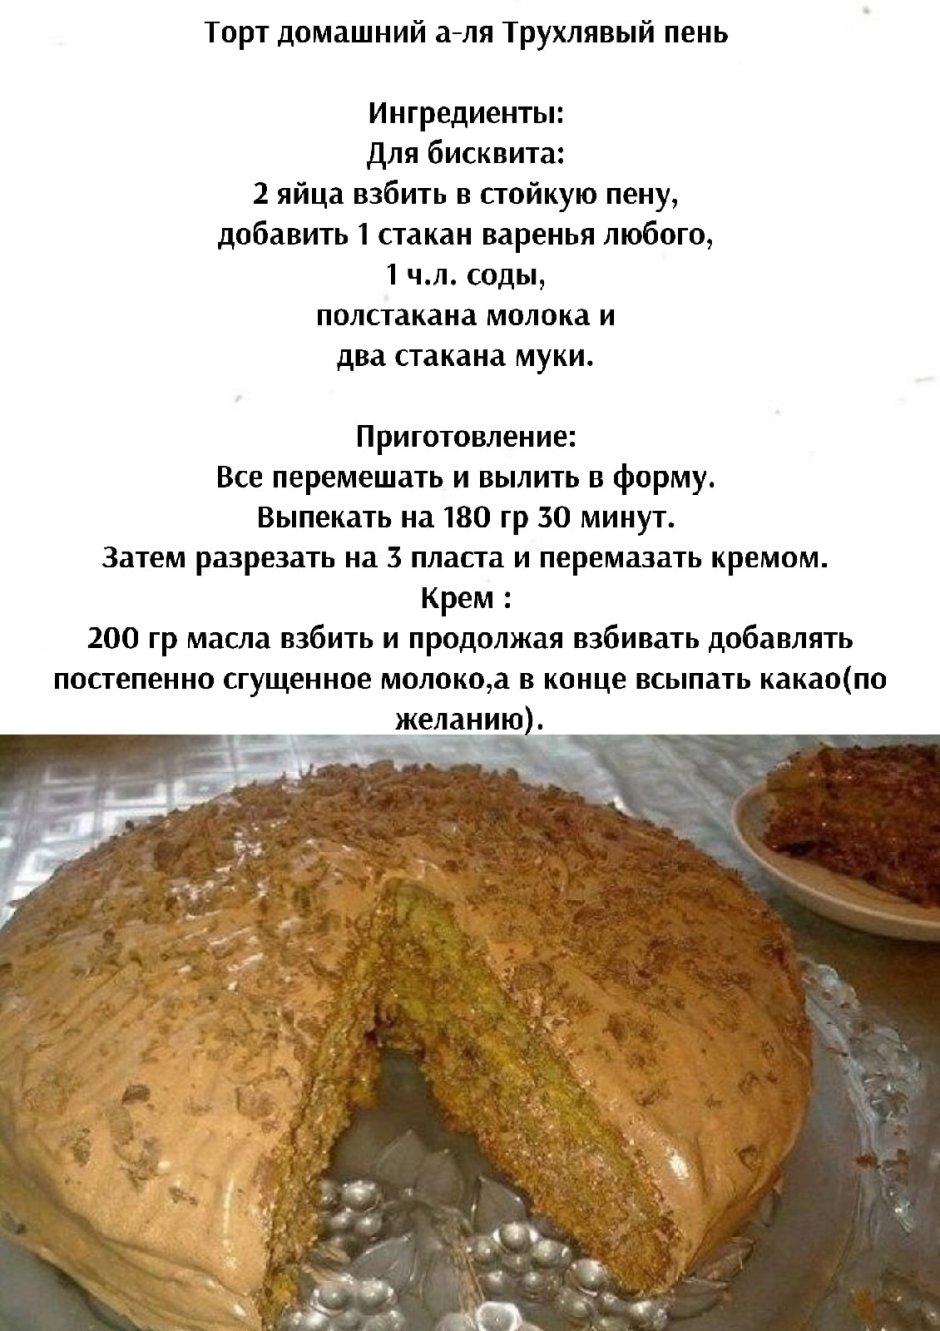 Торт Трухлявый пень классический рецепт